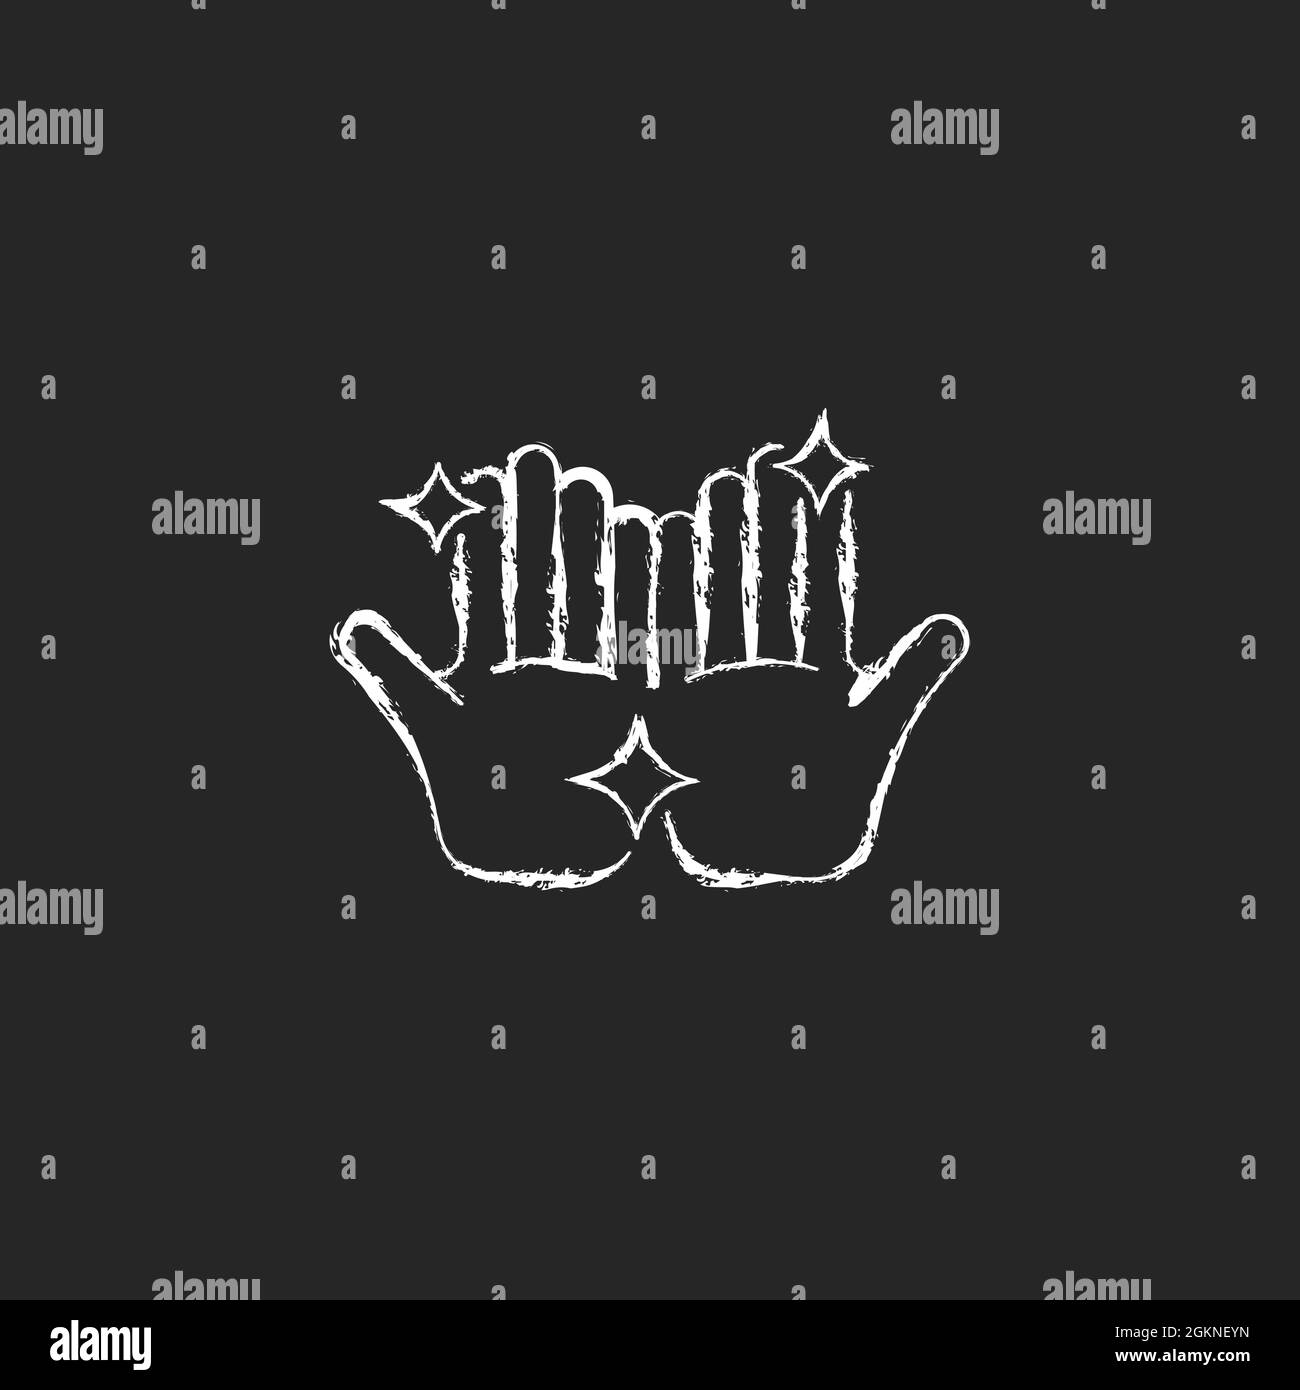 Clean hands chalk white icon on dark background Stock Vector